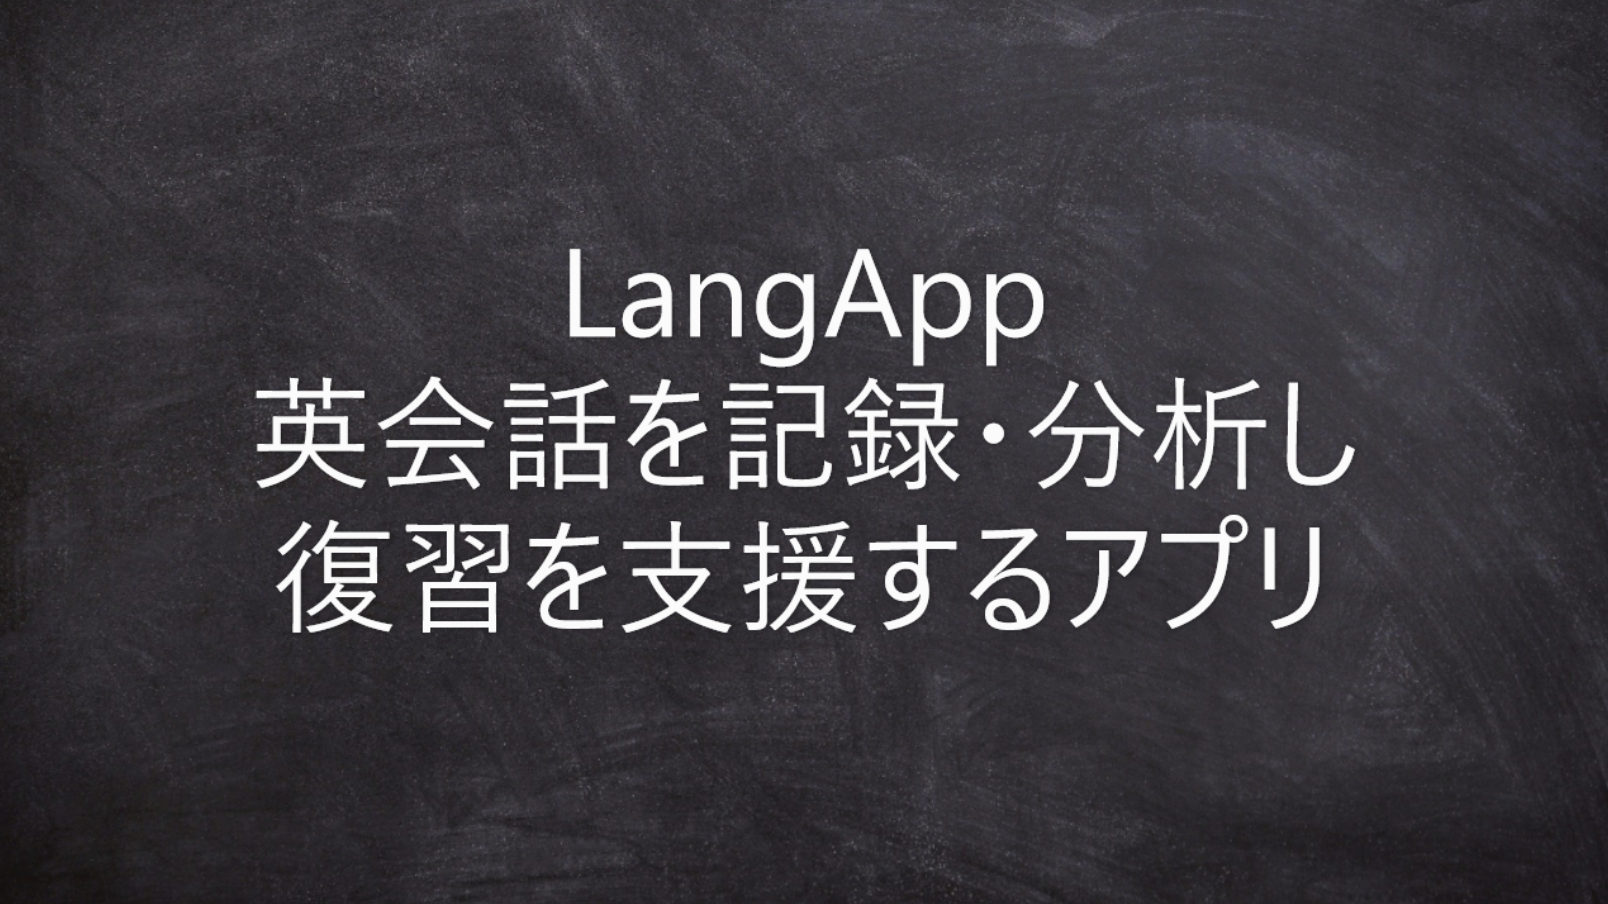 英会話学習サポートアプリ LangApp